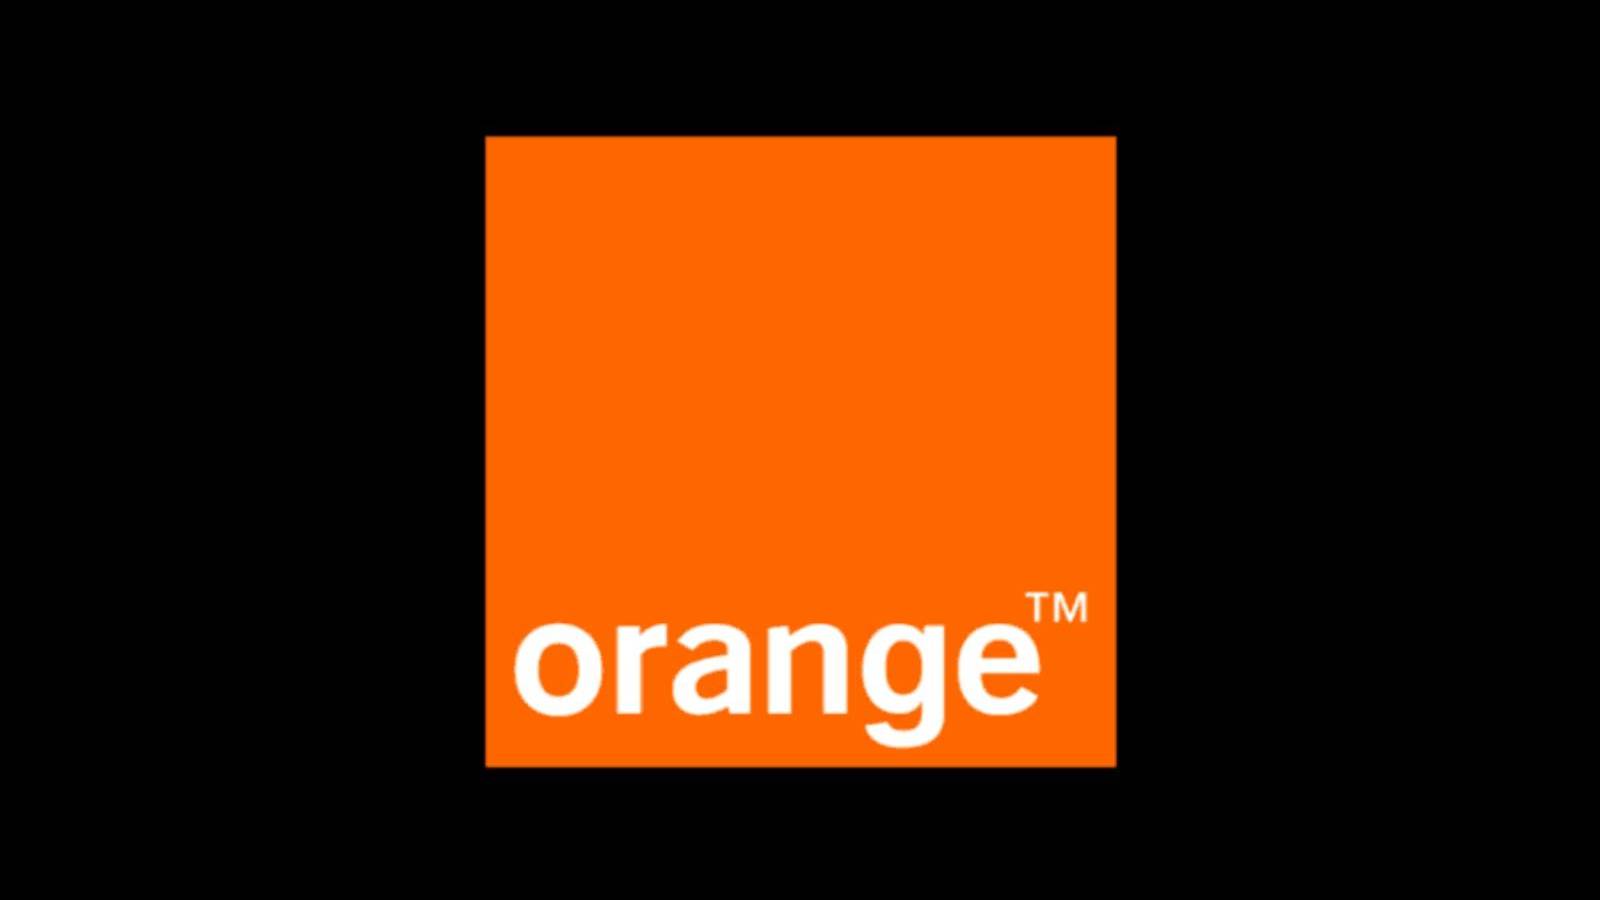 Orange Great News offre GRATUITAMENTE milioni di rumeni